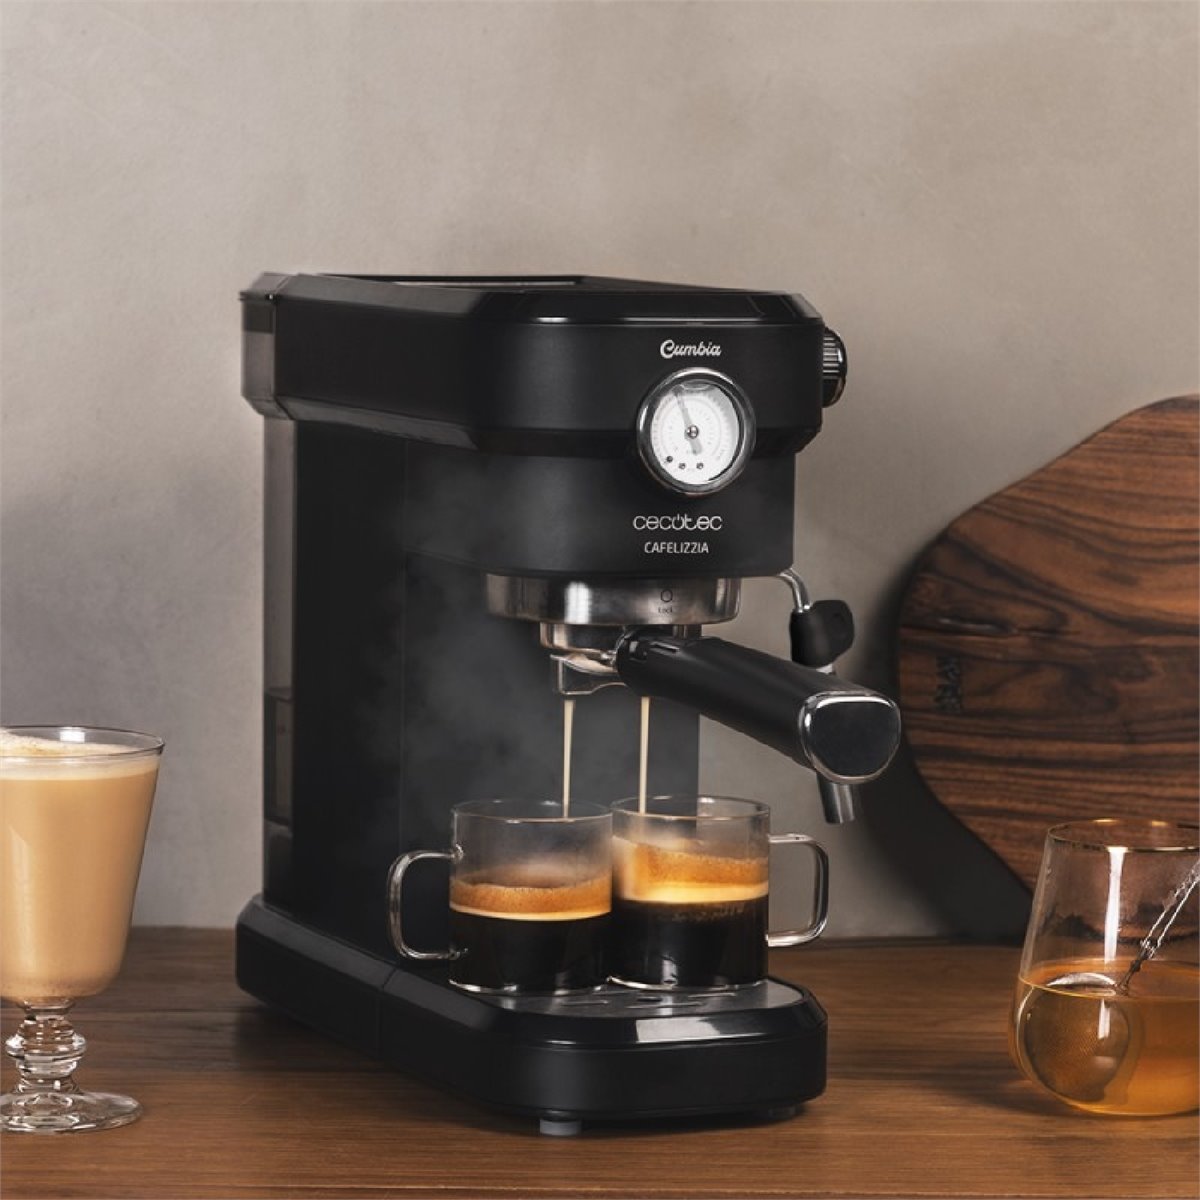 Cafetera Cecotec Espresso 20 bar de segunda mano por 25 EUR en